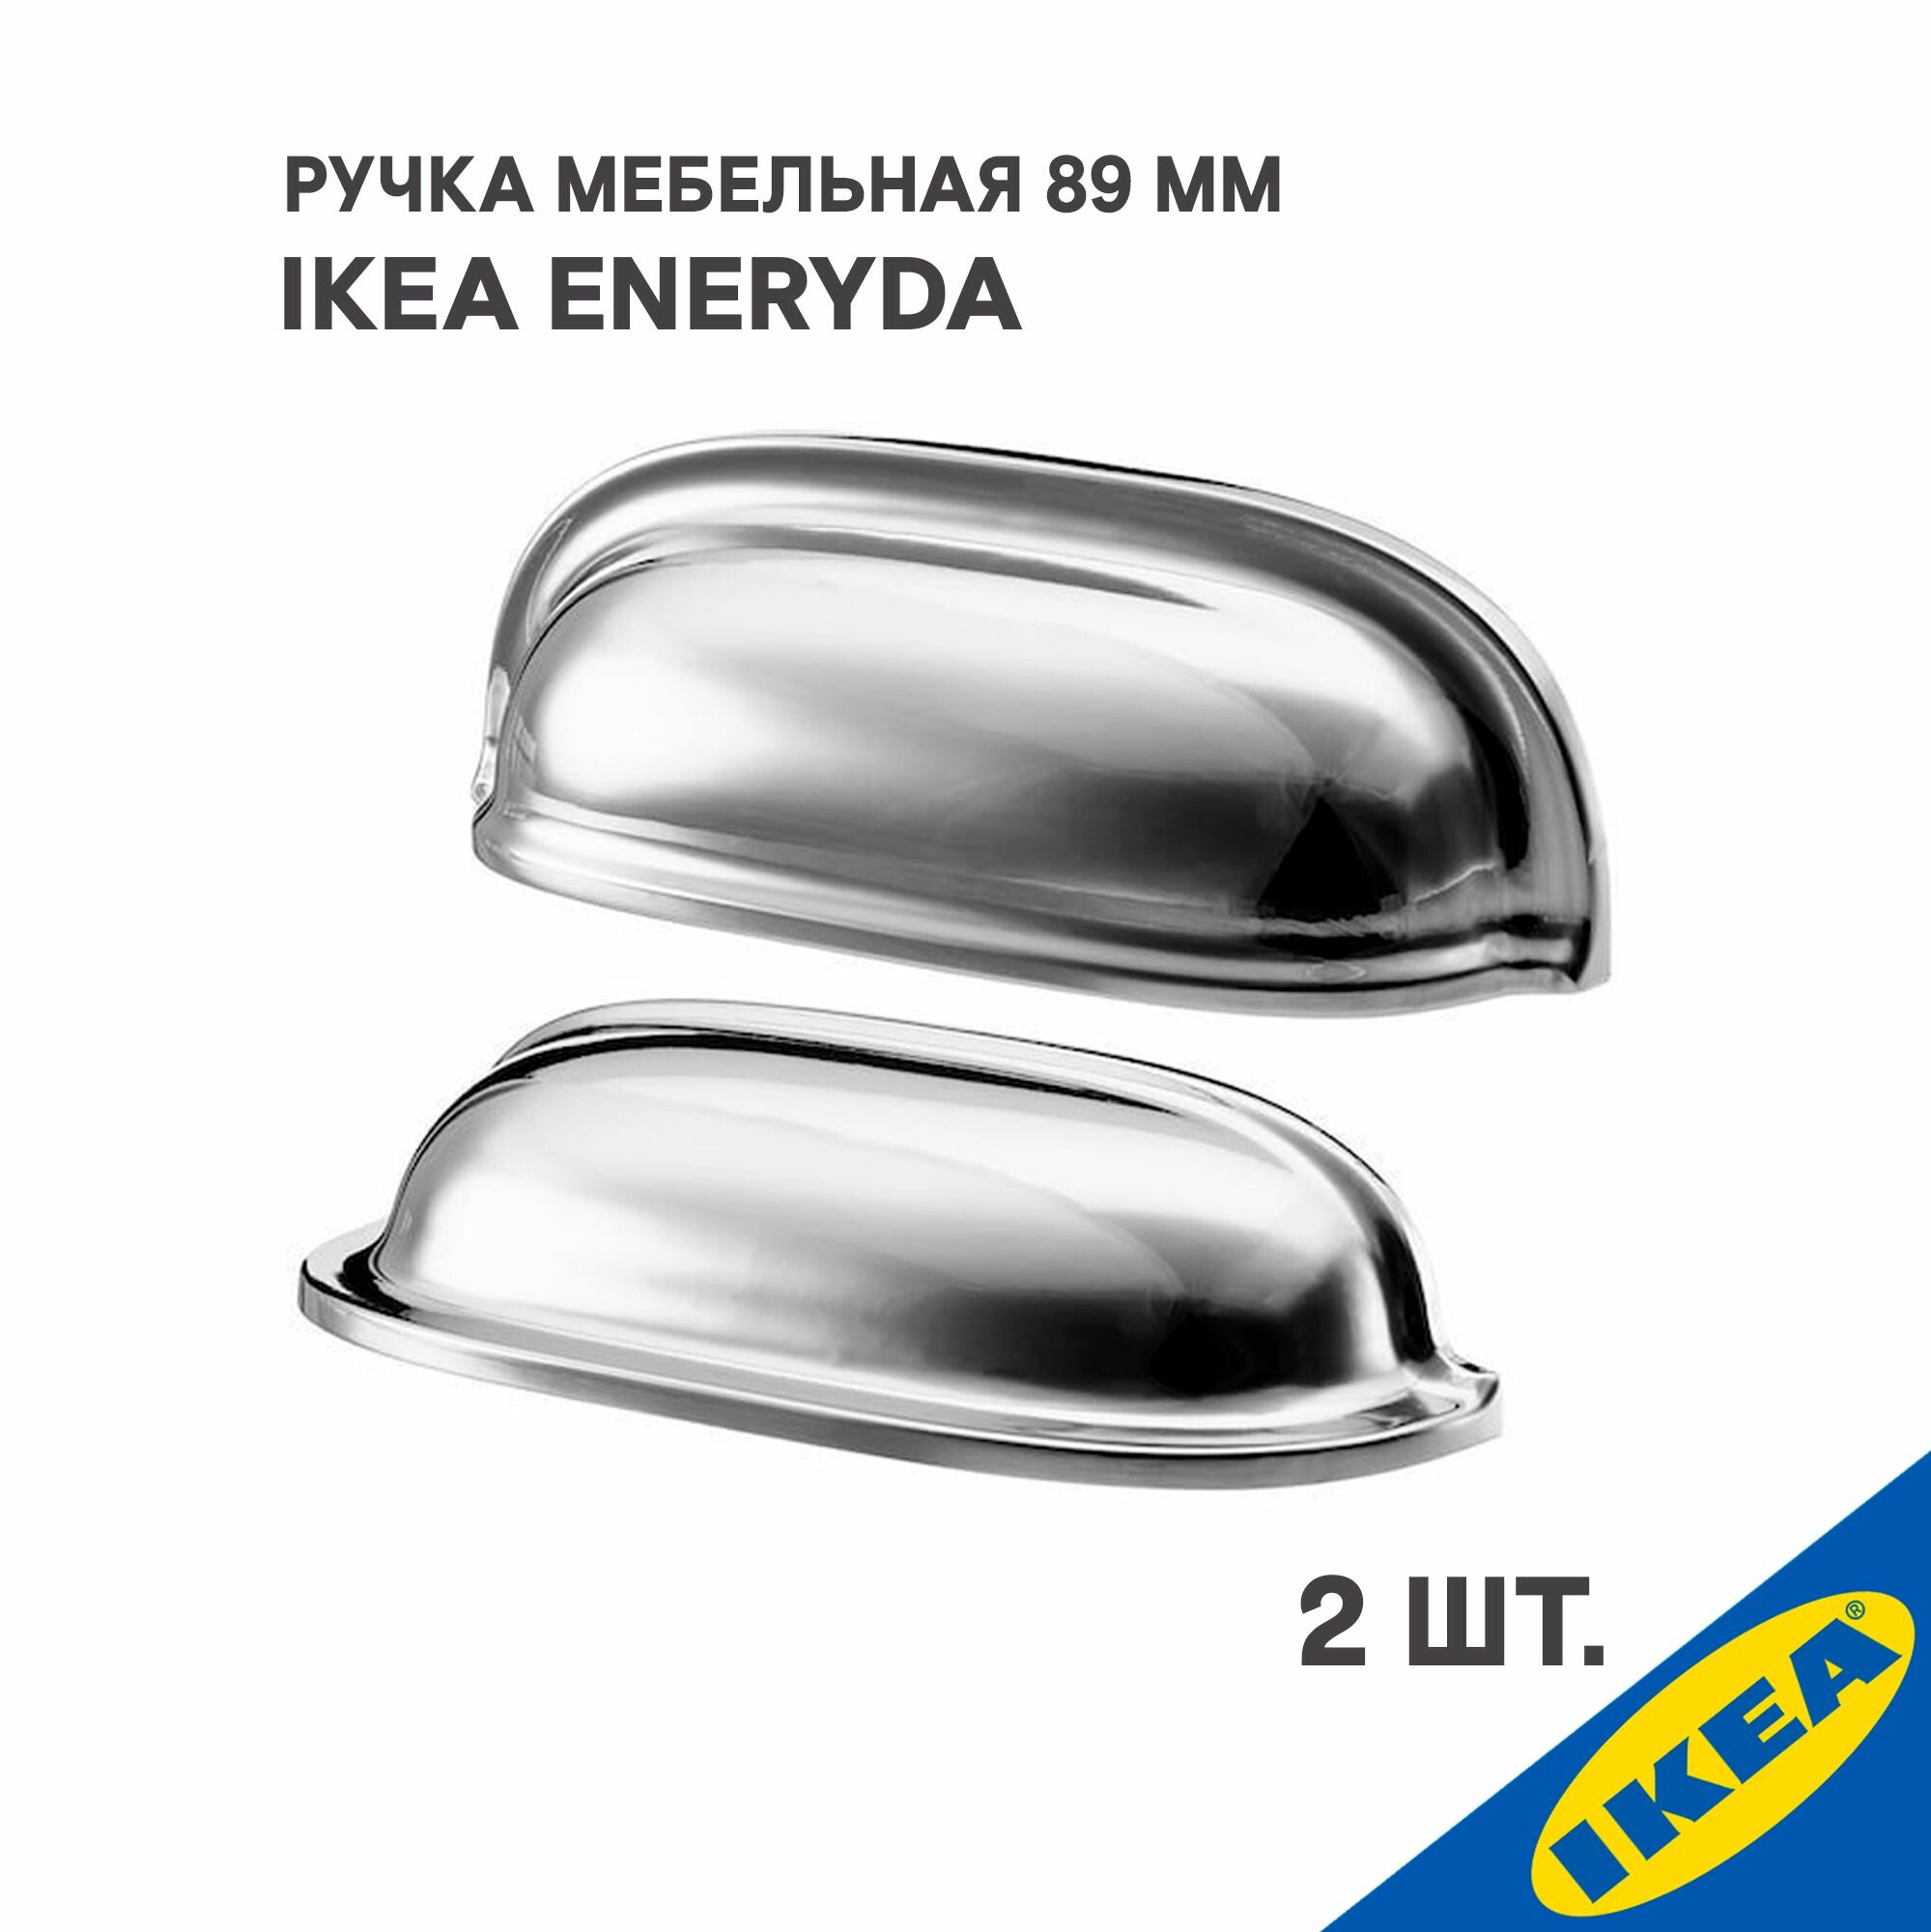 Ручка для мебели IKEA ENERYDA, 89 мм, хромированная